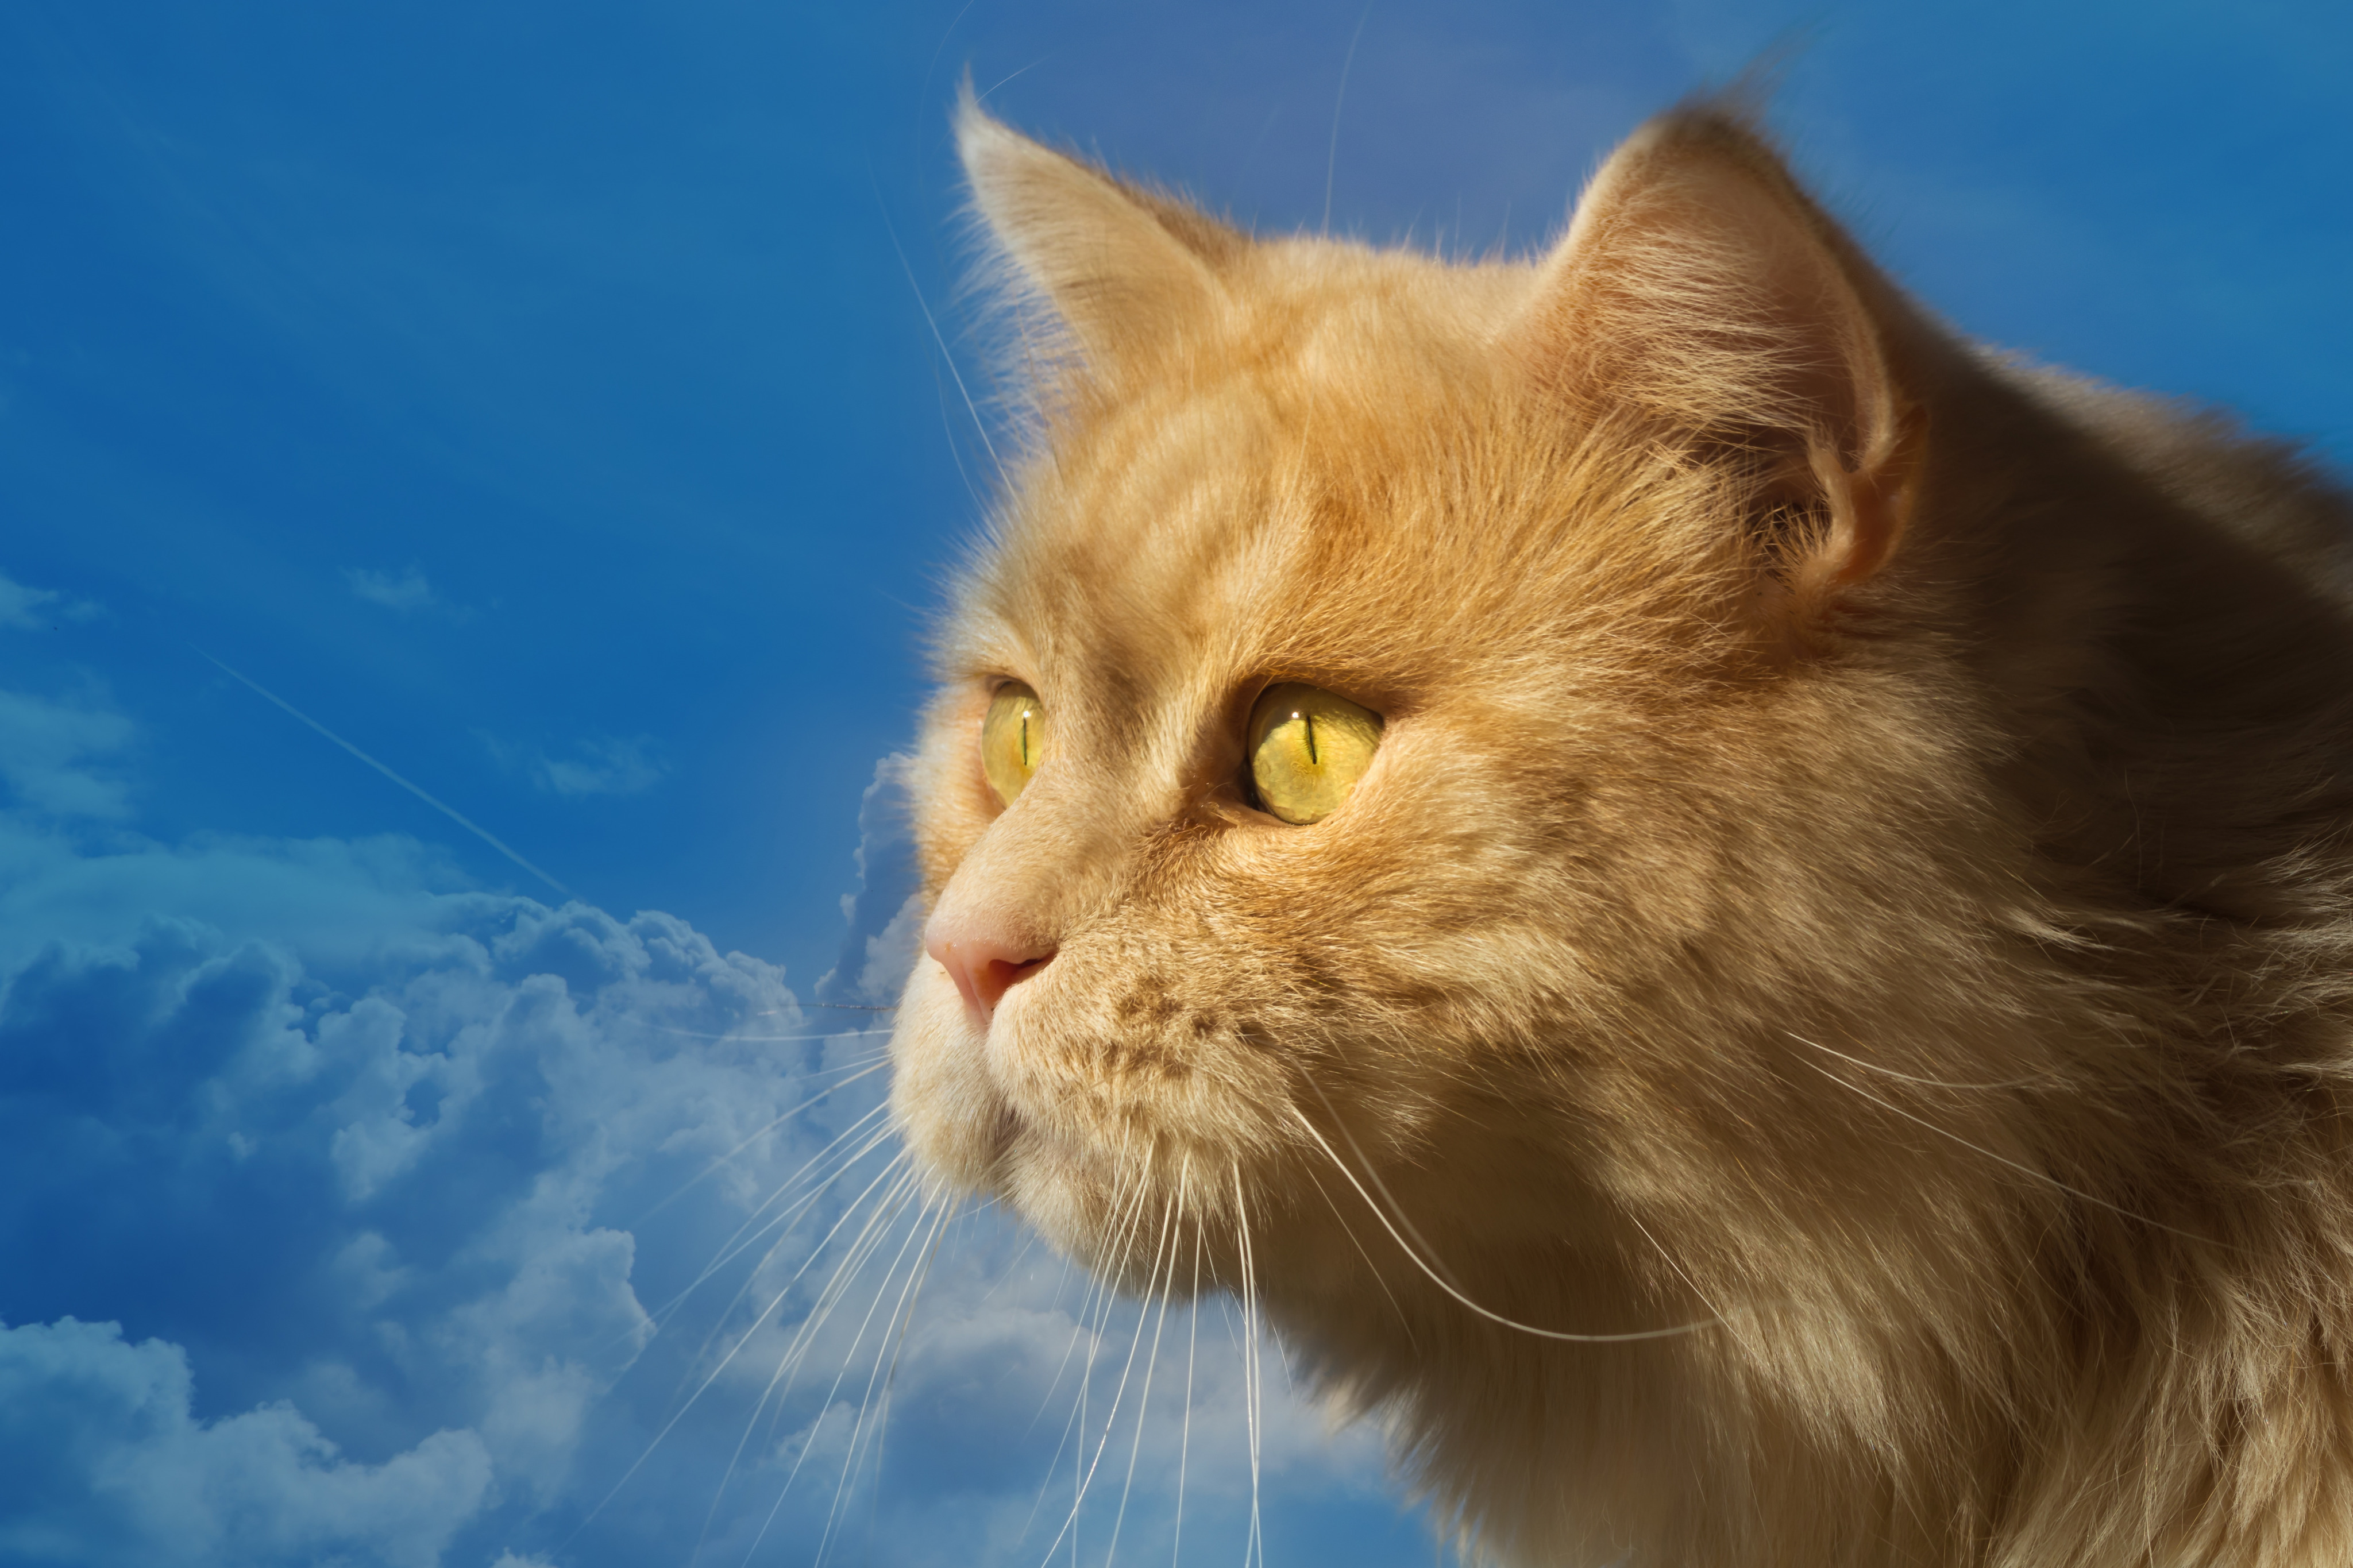 Descarga gratuita de fondo de pantalla para móvil de Animales, Gatos, Gato, Perfil.